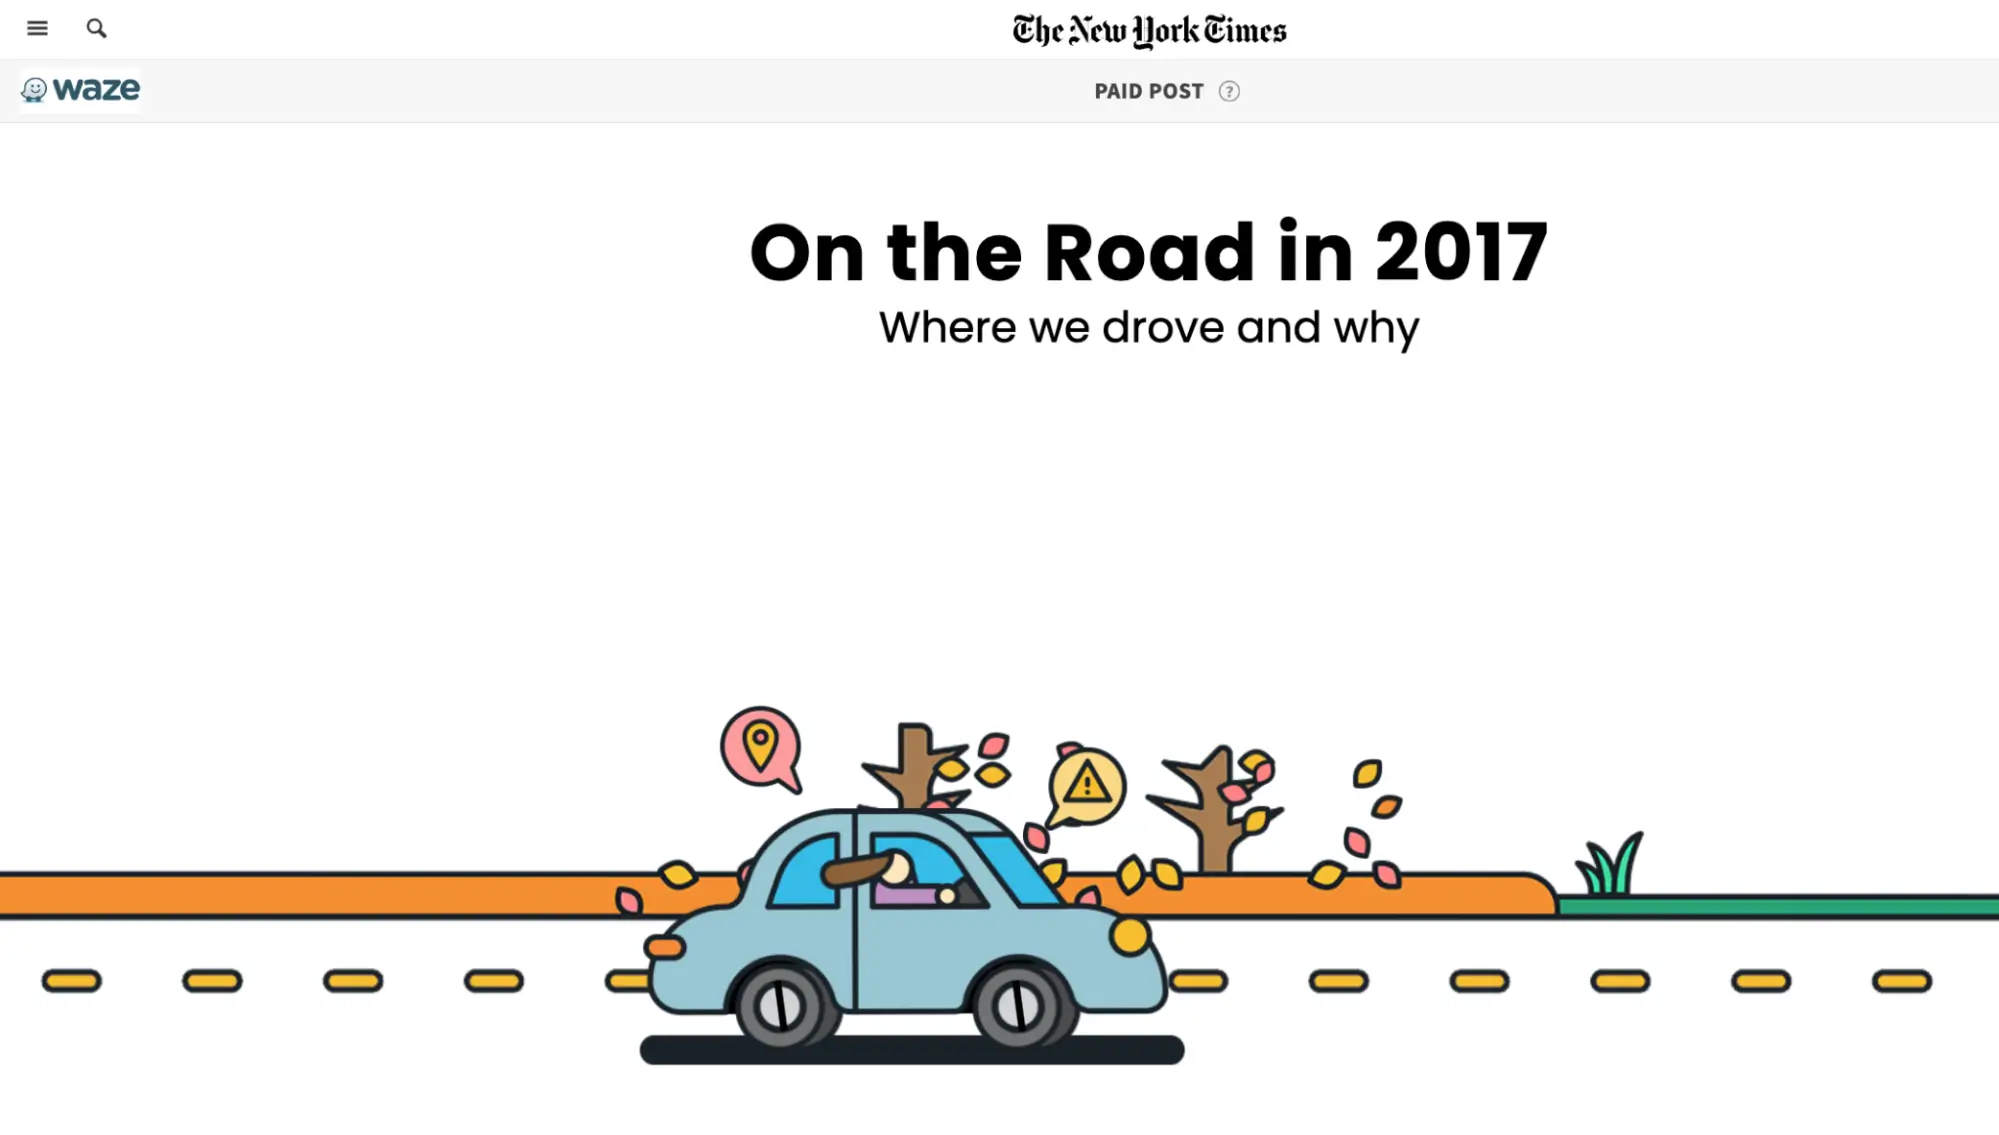 تعرض هذه الصورة حملة Waze "On the Road"، التي تم إنشاؤها بالشراكة مع New York Times، والتي تتميز بمحتوى تفاعلي يعتمد على بيانات التطبيق الحقيقية. هدفت الحملة إلى الكشف عن الاتجاهات السائدة والأسباب الكامنة وراءها، وتقديم محتوى إعلامي وقابل للمشاركة من خلال صفحة تفاعلية تحتوي على رسومات جذابة.